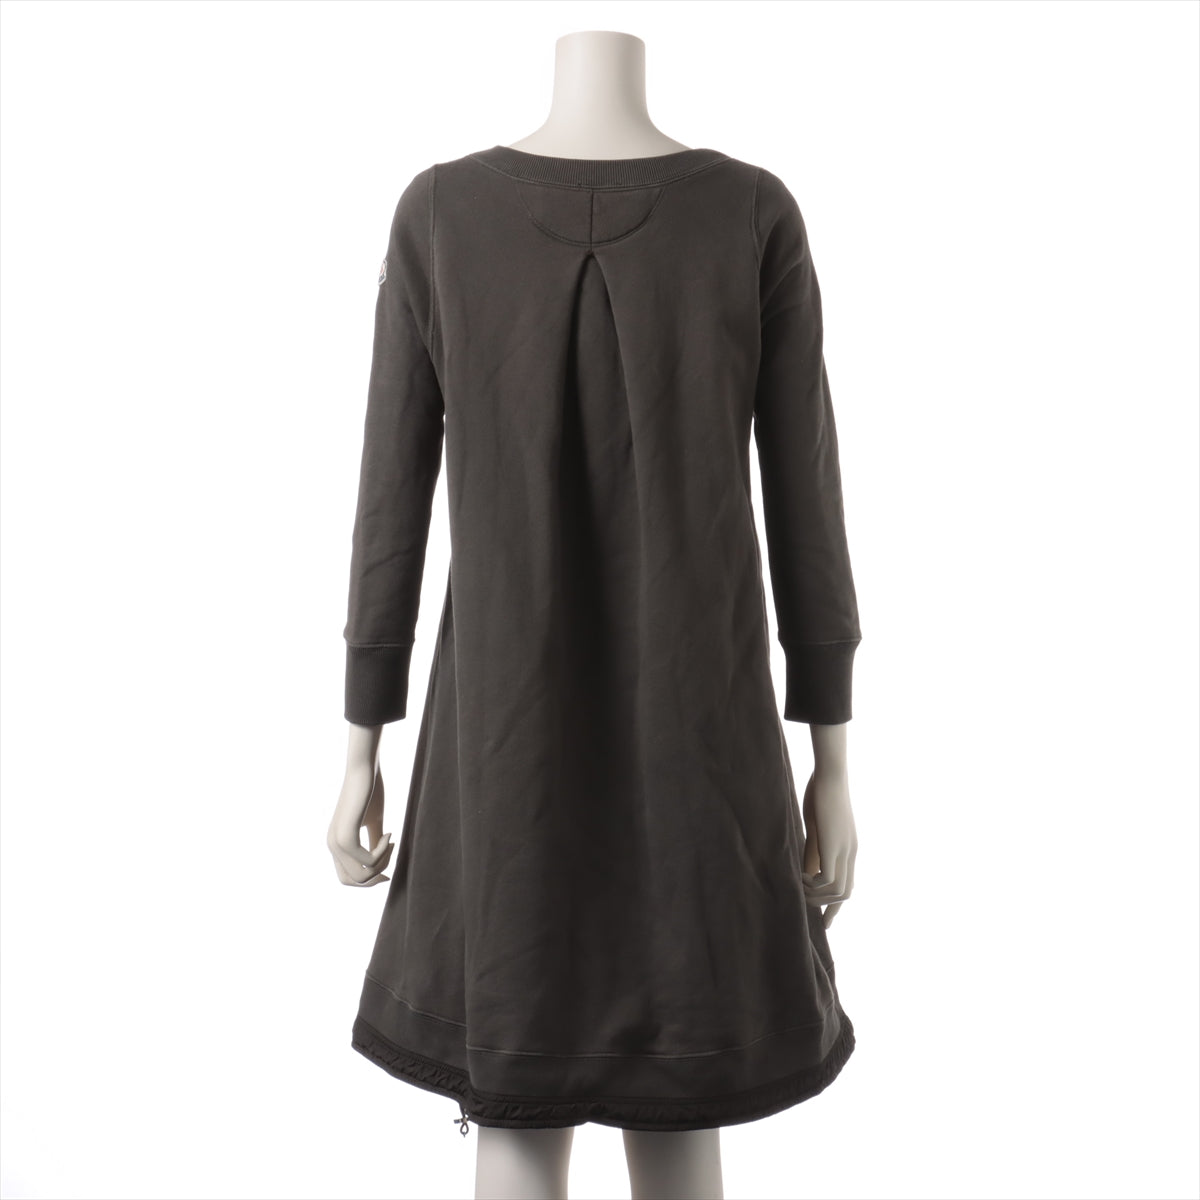 Moncler 14 years Cotton & nylon Dress S Ladies' Khaki  420938096300